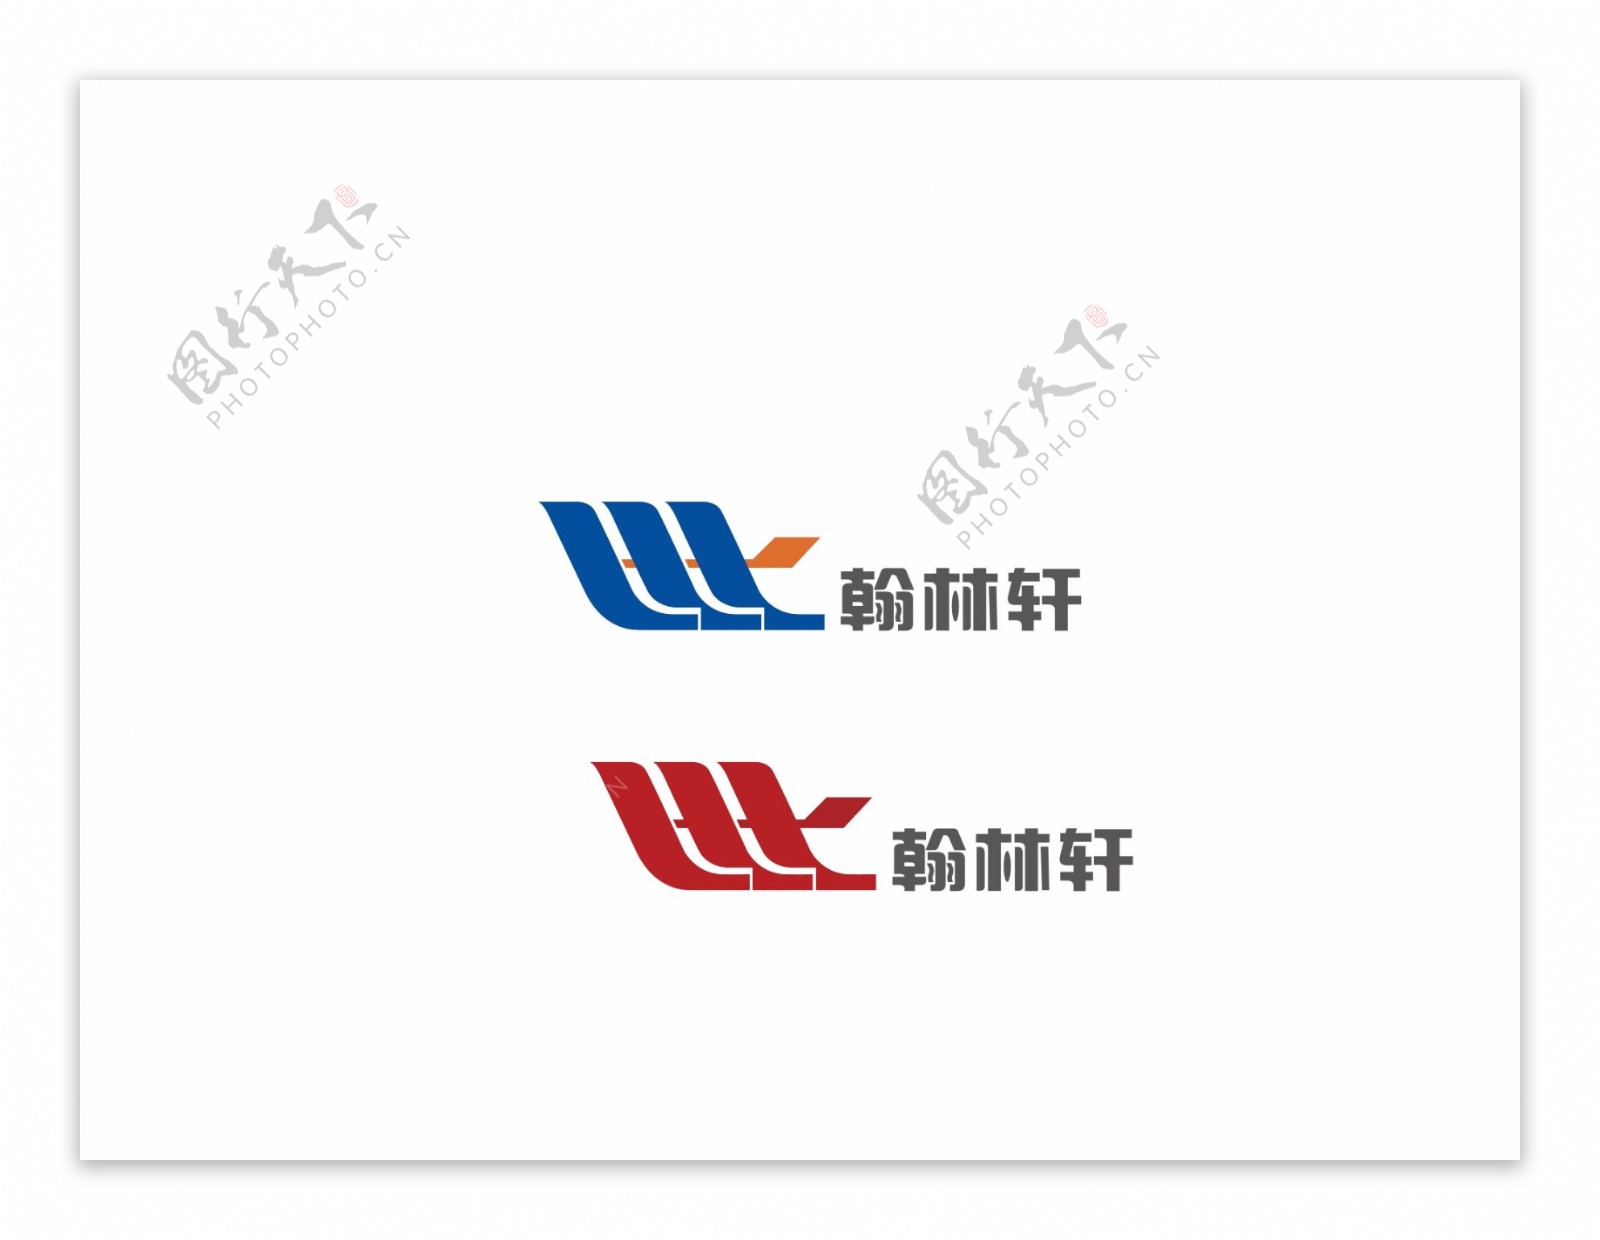 翰林轩玻璃书店logo图片